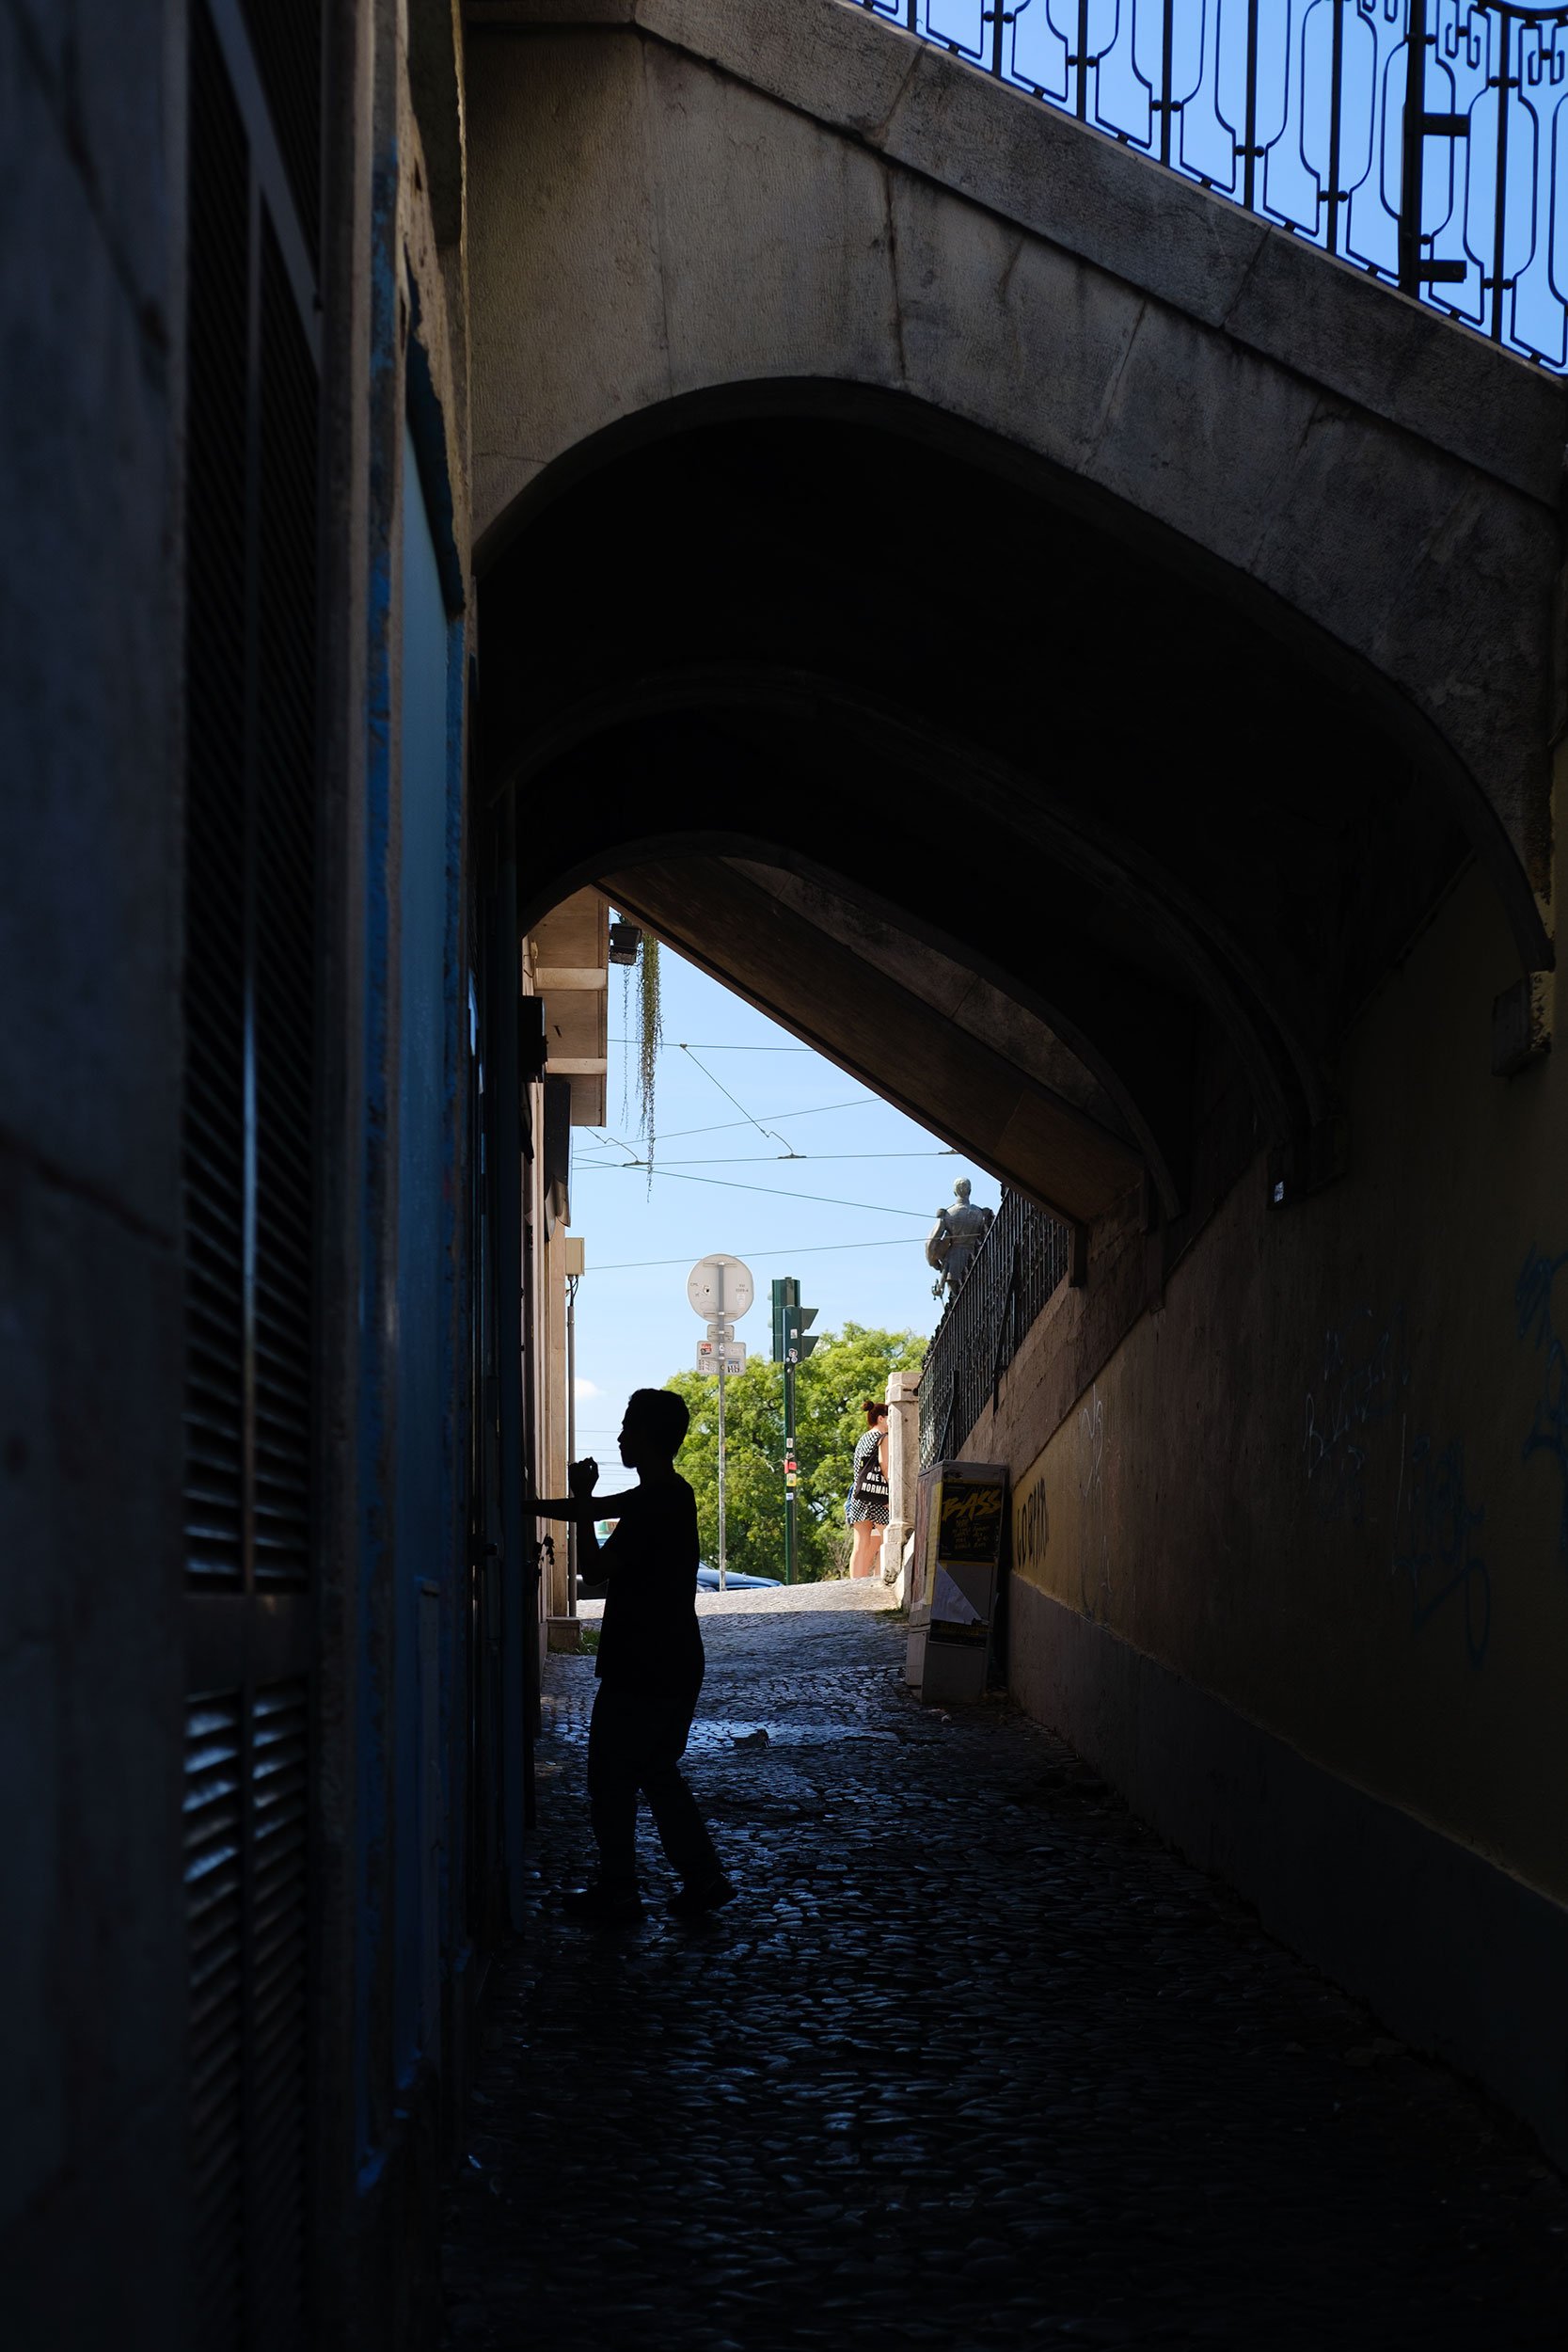 Man in silhouette in Lisbon alley.